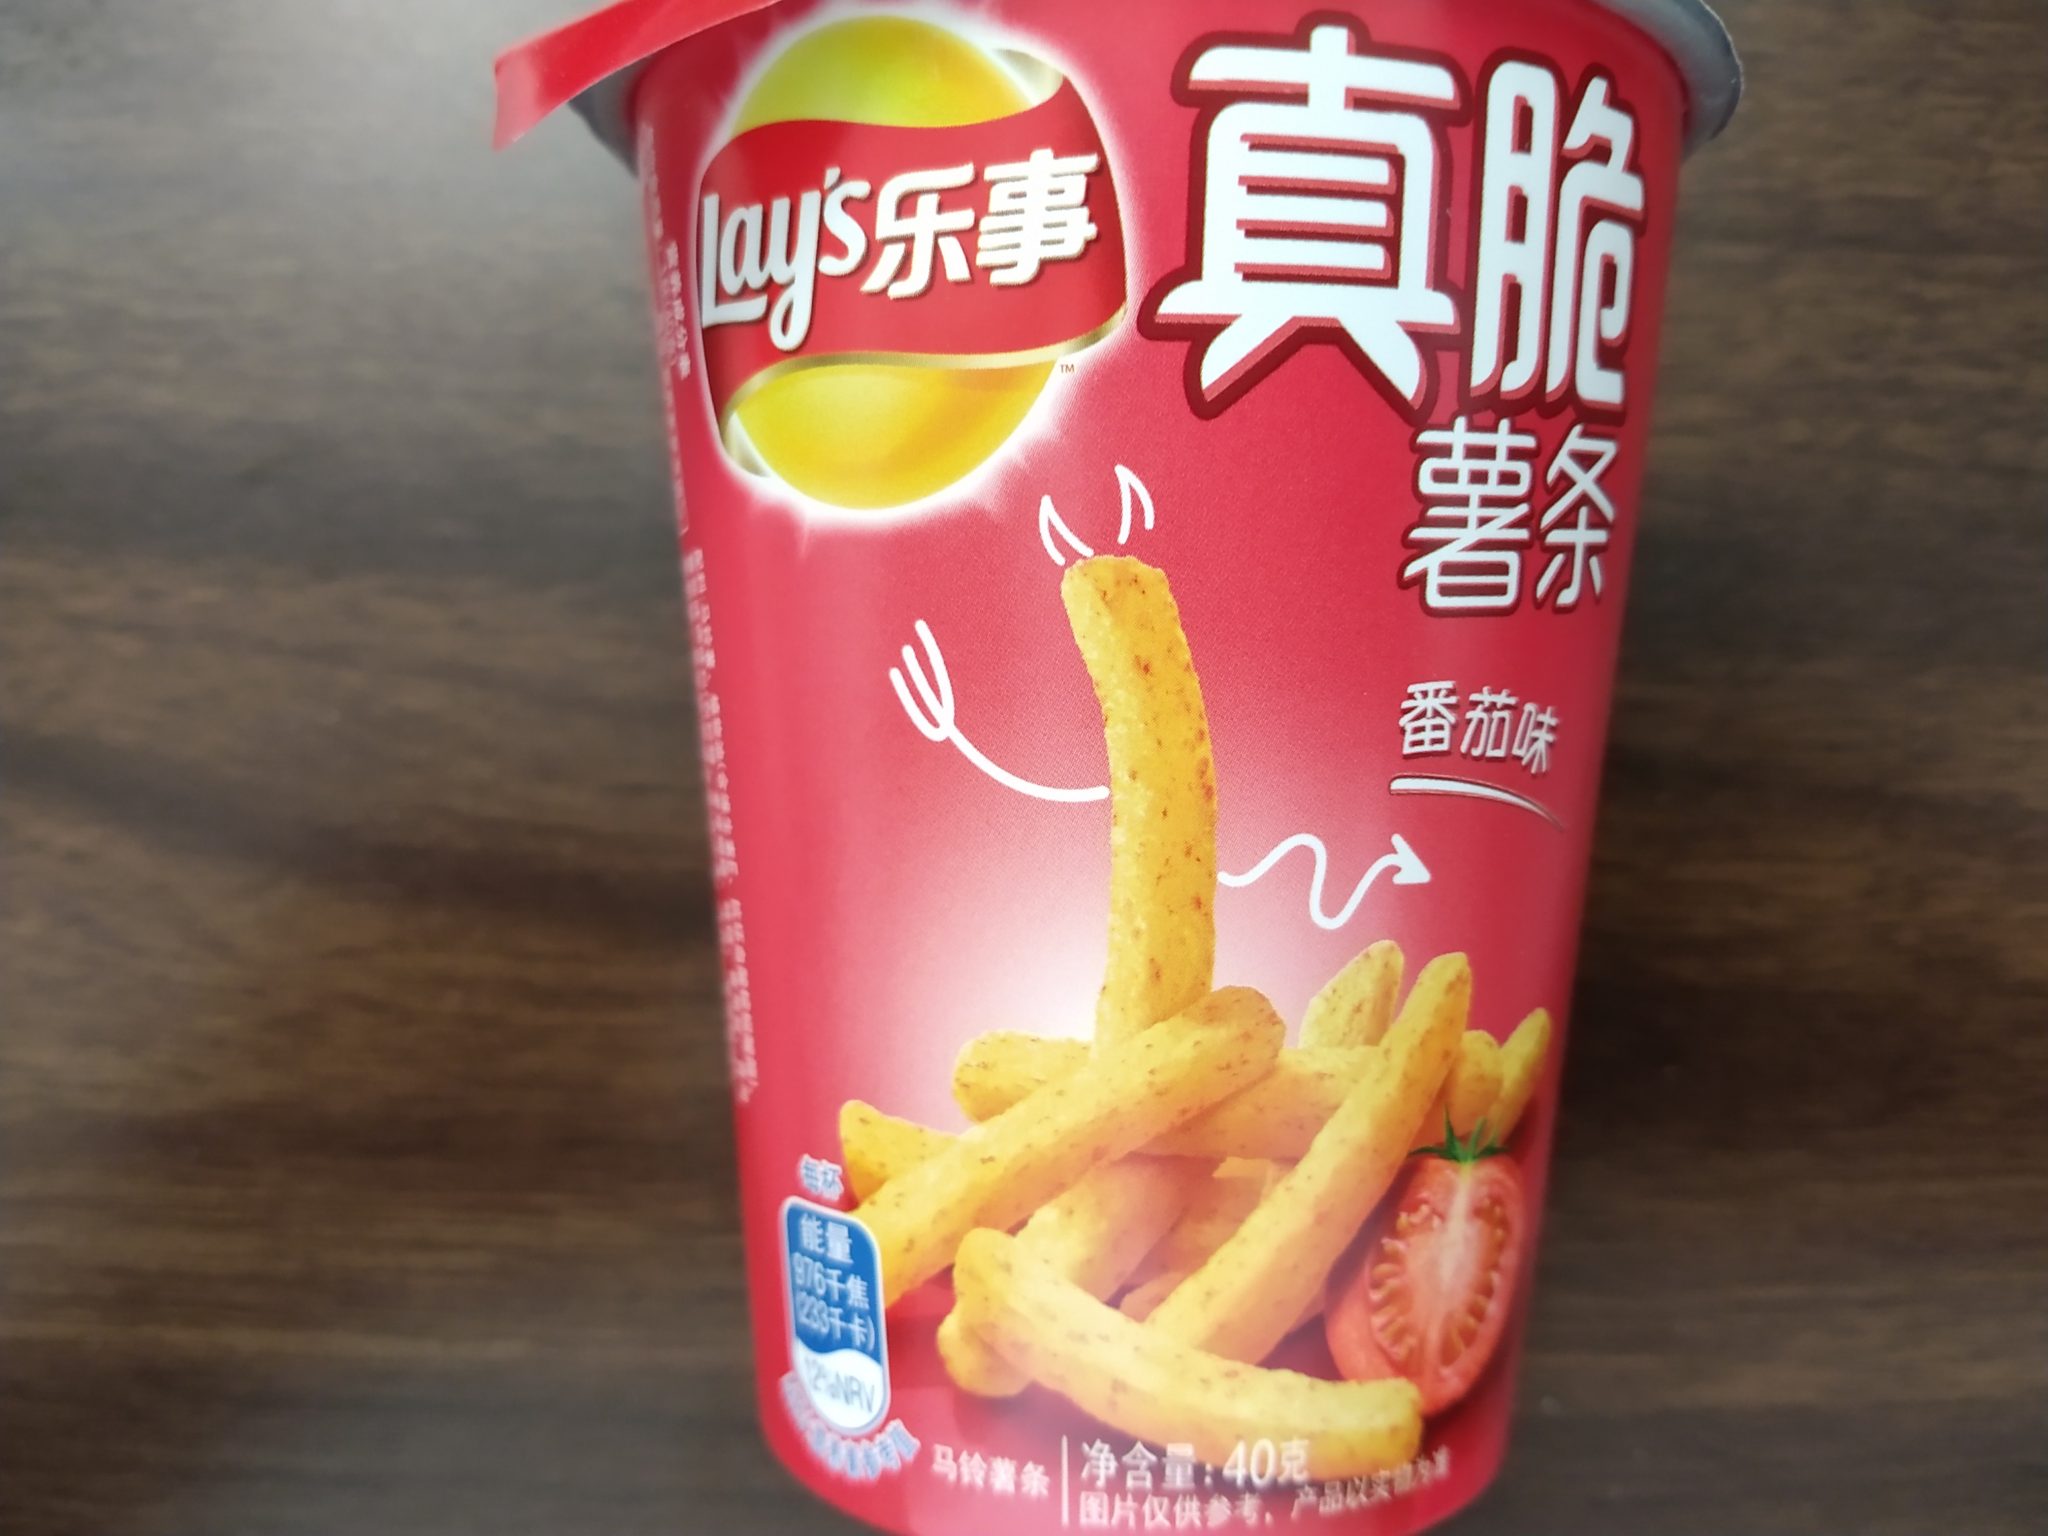 Lay’s Potato Sticks – Tomato Flavour